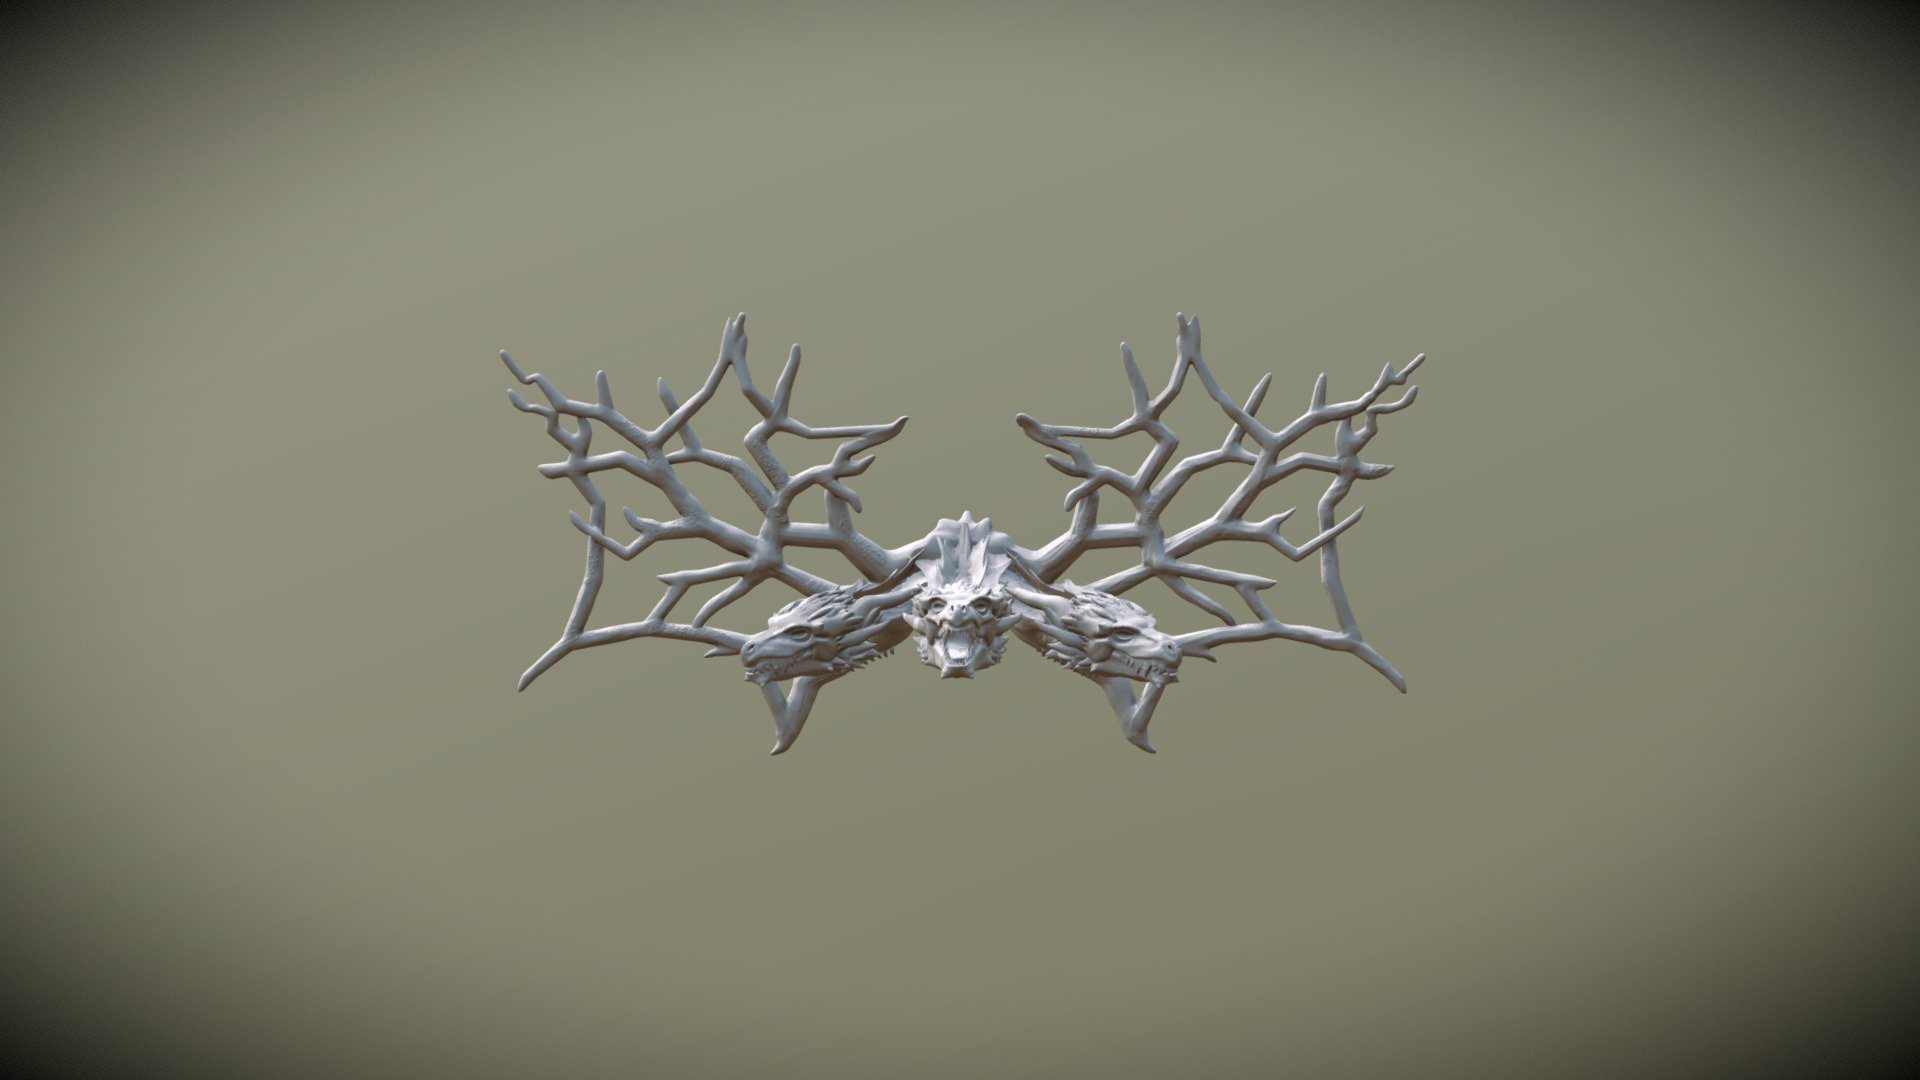 Game of Thrones Daenerys Targaryen Dragon Metal Pendant Necklace | eBay